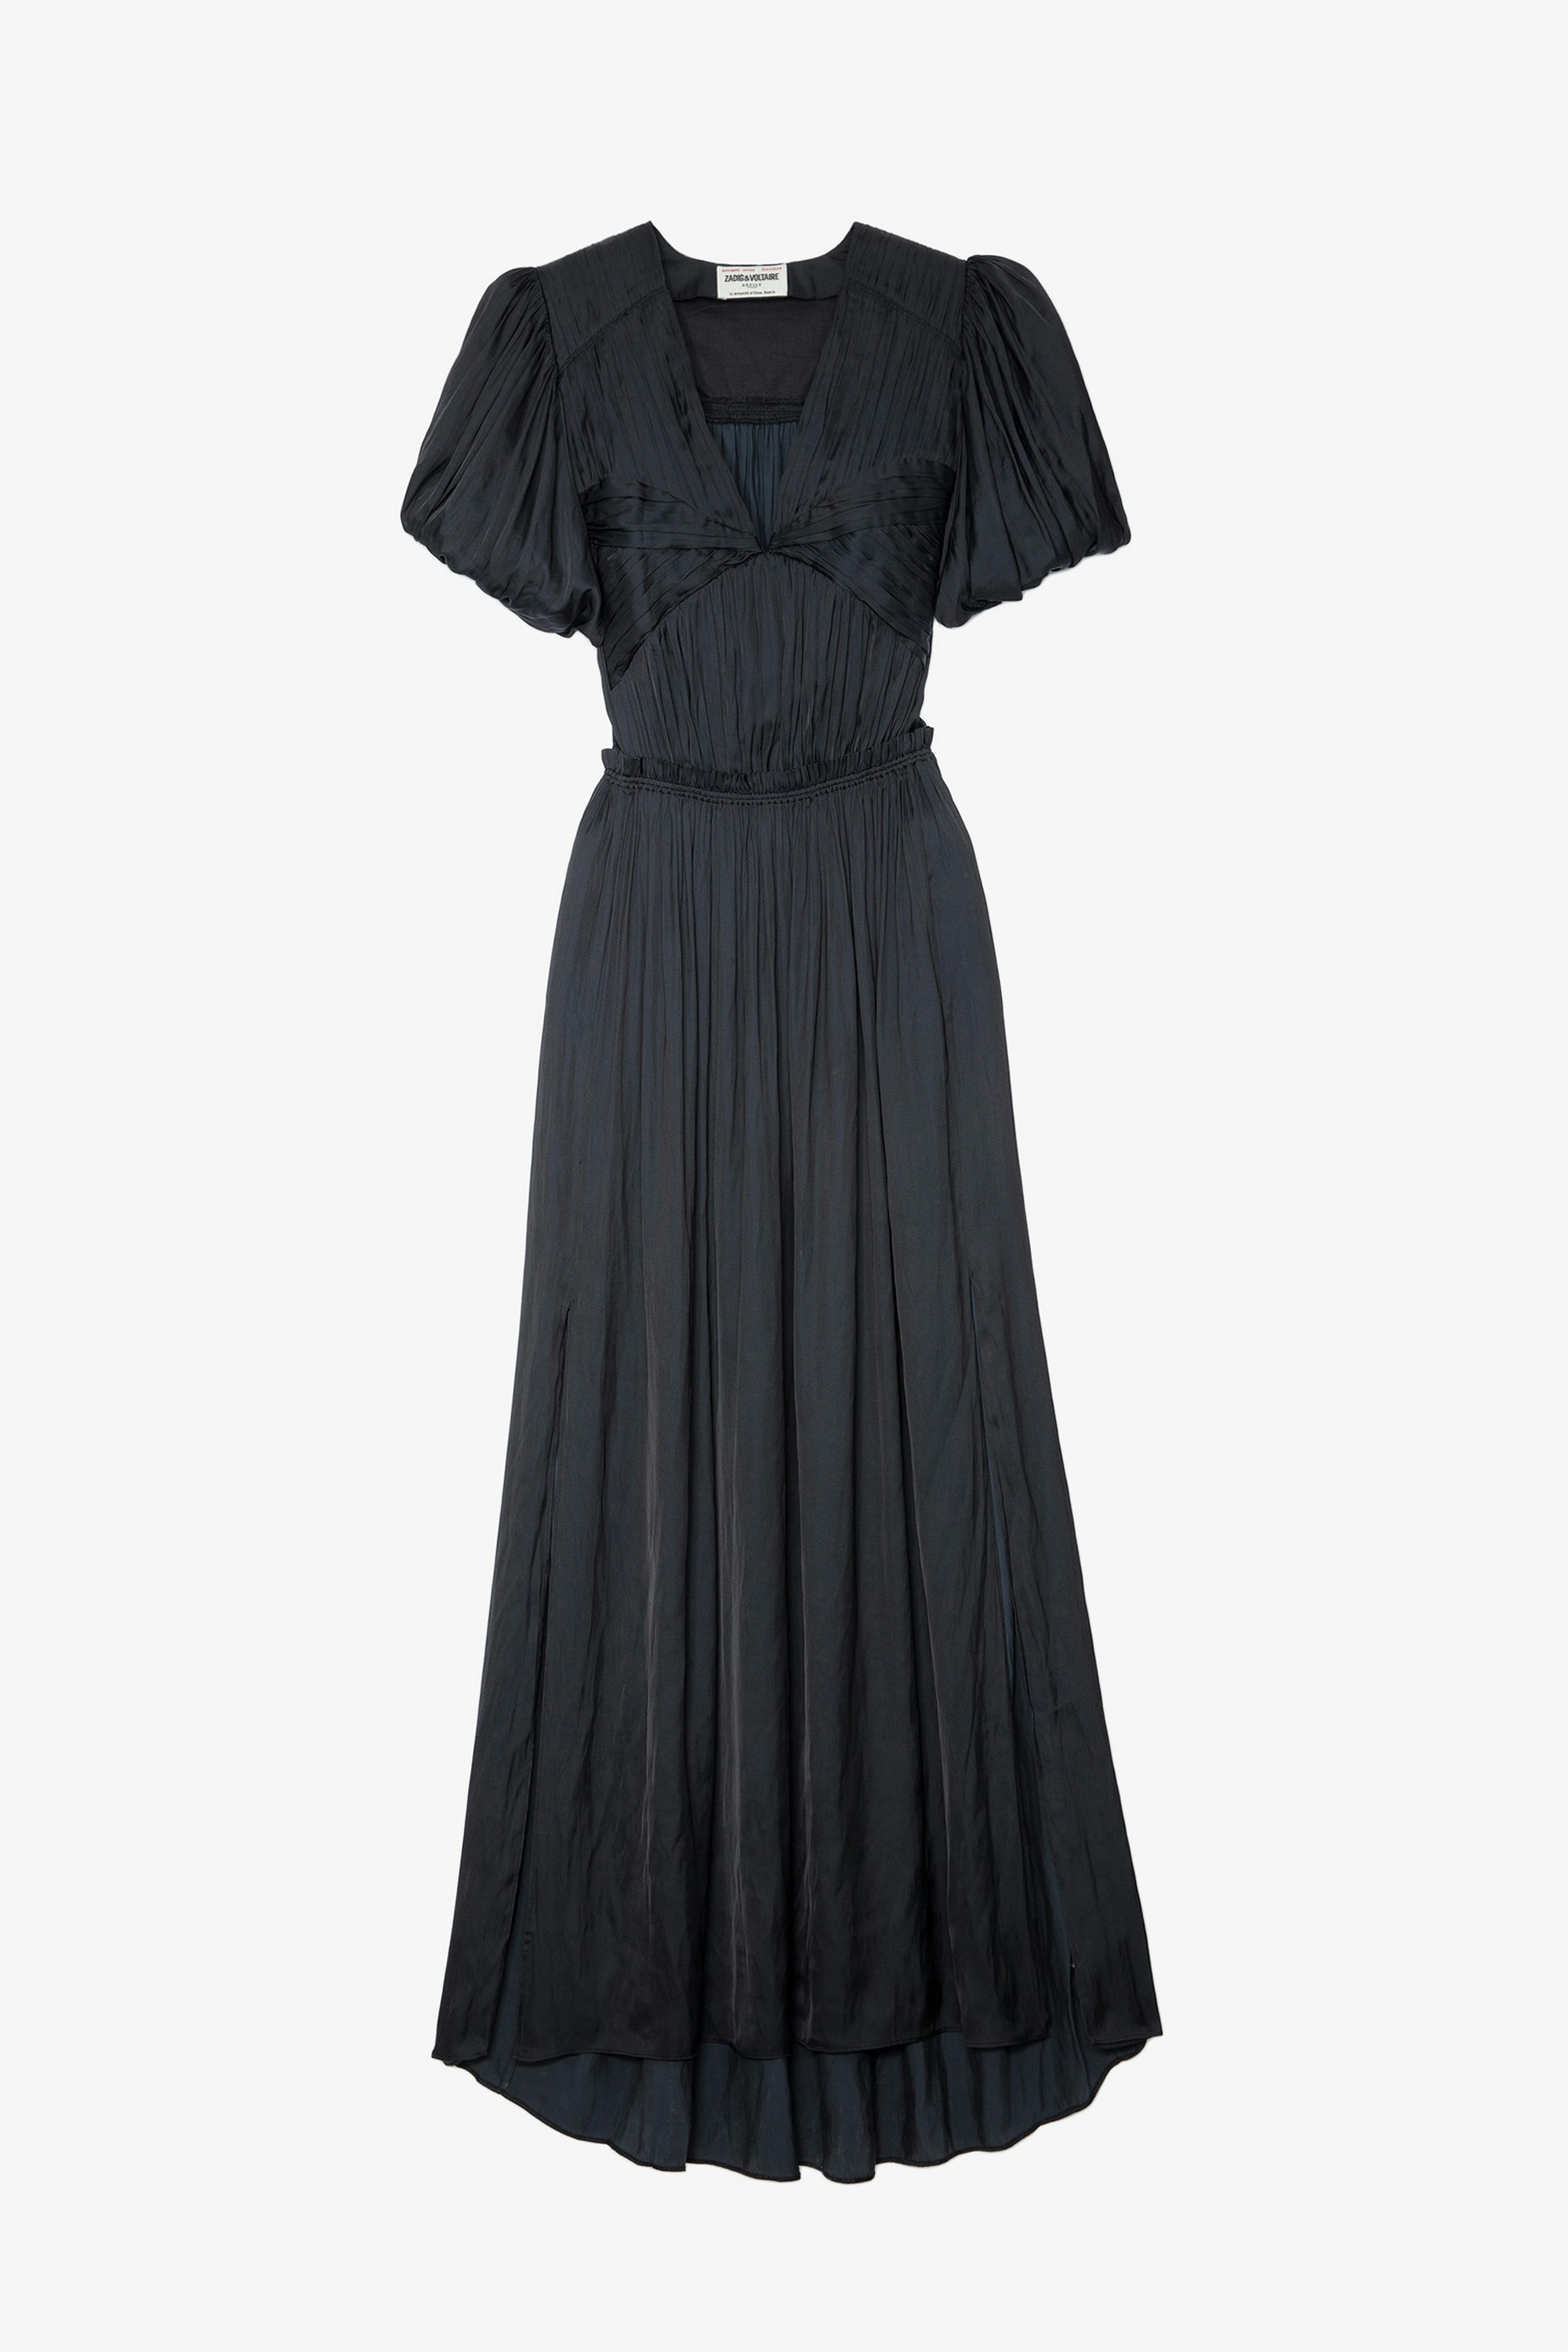 Vestido de Satén Reina - Vestido negro largo de satén fruncido y drapeado con mangas cortas tipo globo.